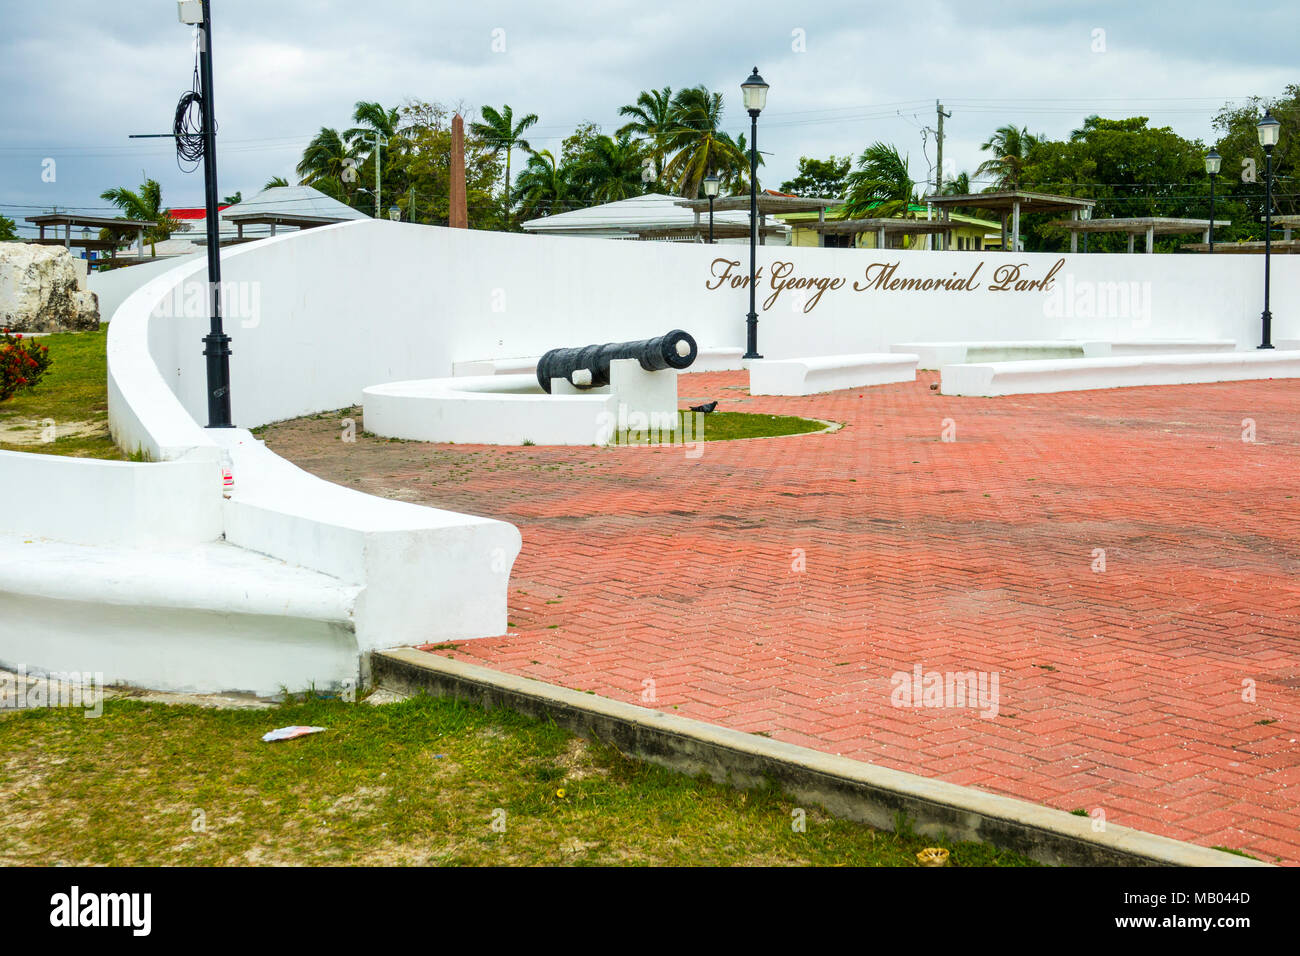 Fort George WW ICH memorial park Kreuzfahrt Reiseziel Belize in Mittelamerika ist ein beliebter Stopp auf der westlichen Karibik Kreuzfahrt Schiff Tour und bietet Sh Stockfoto